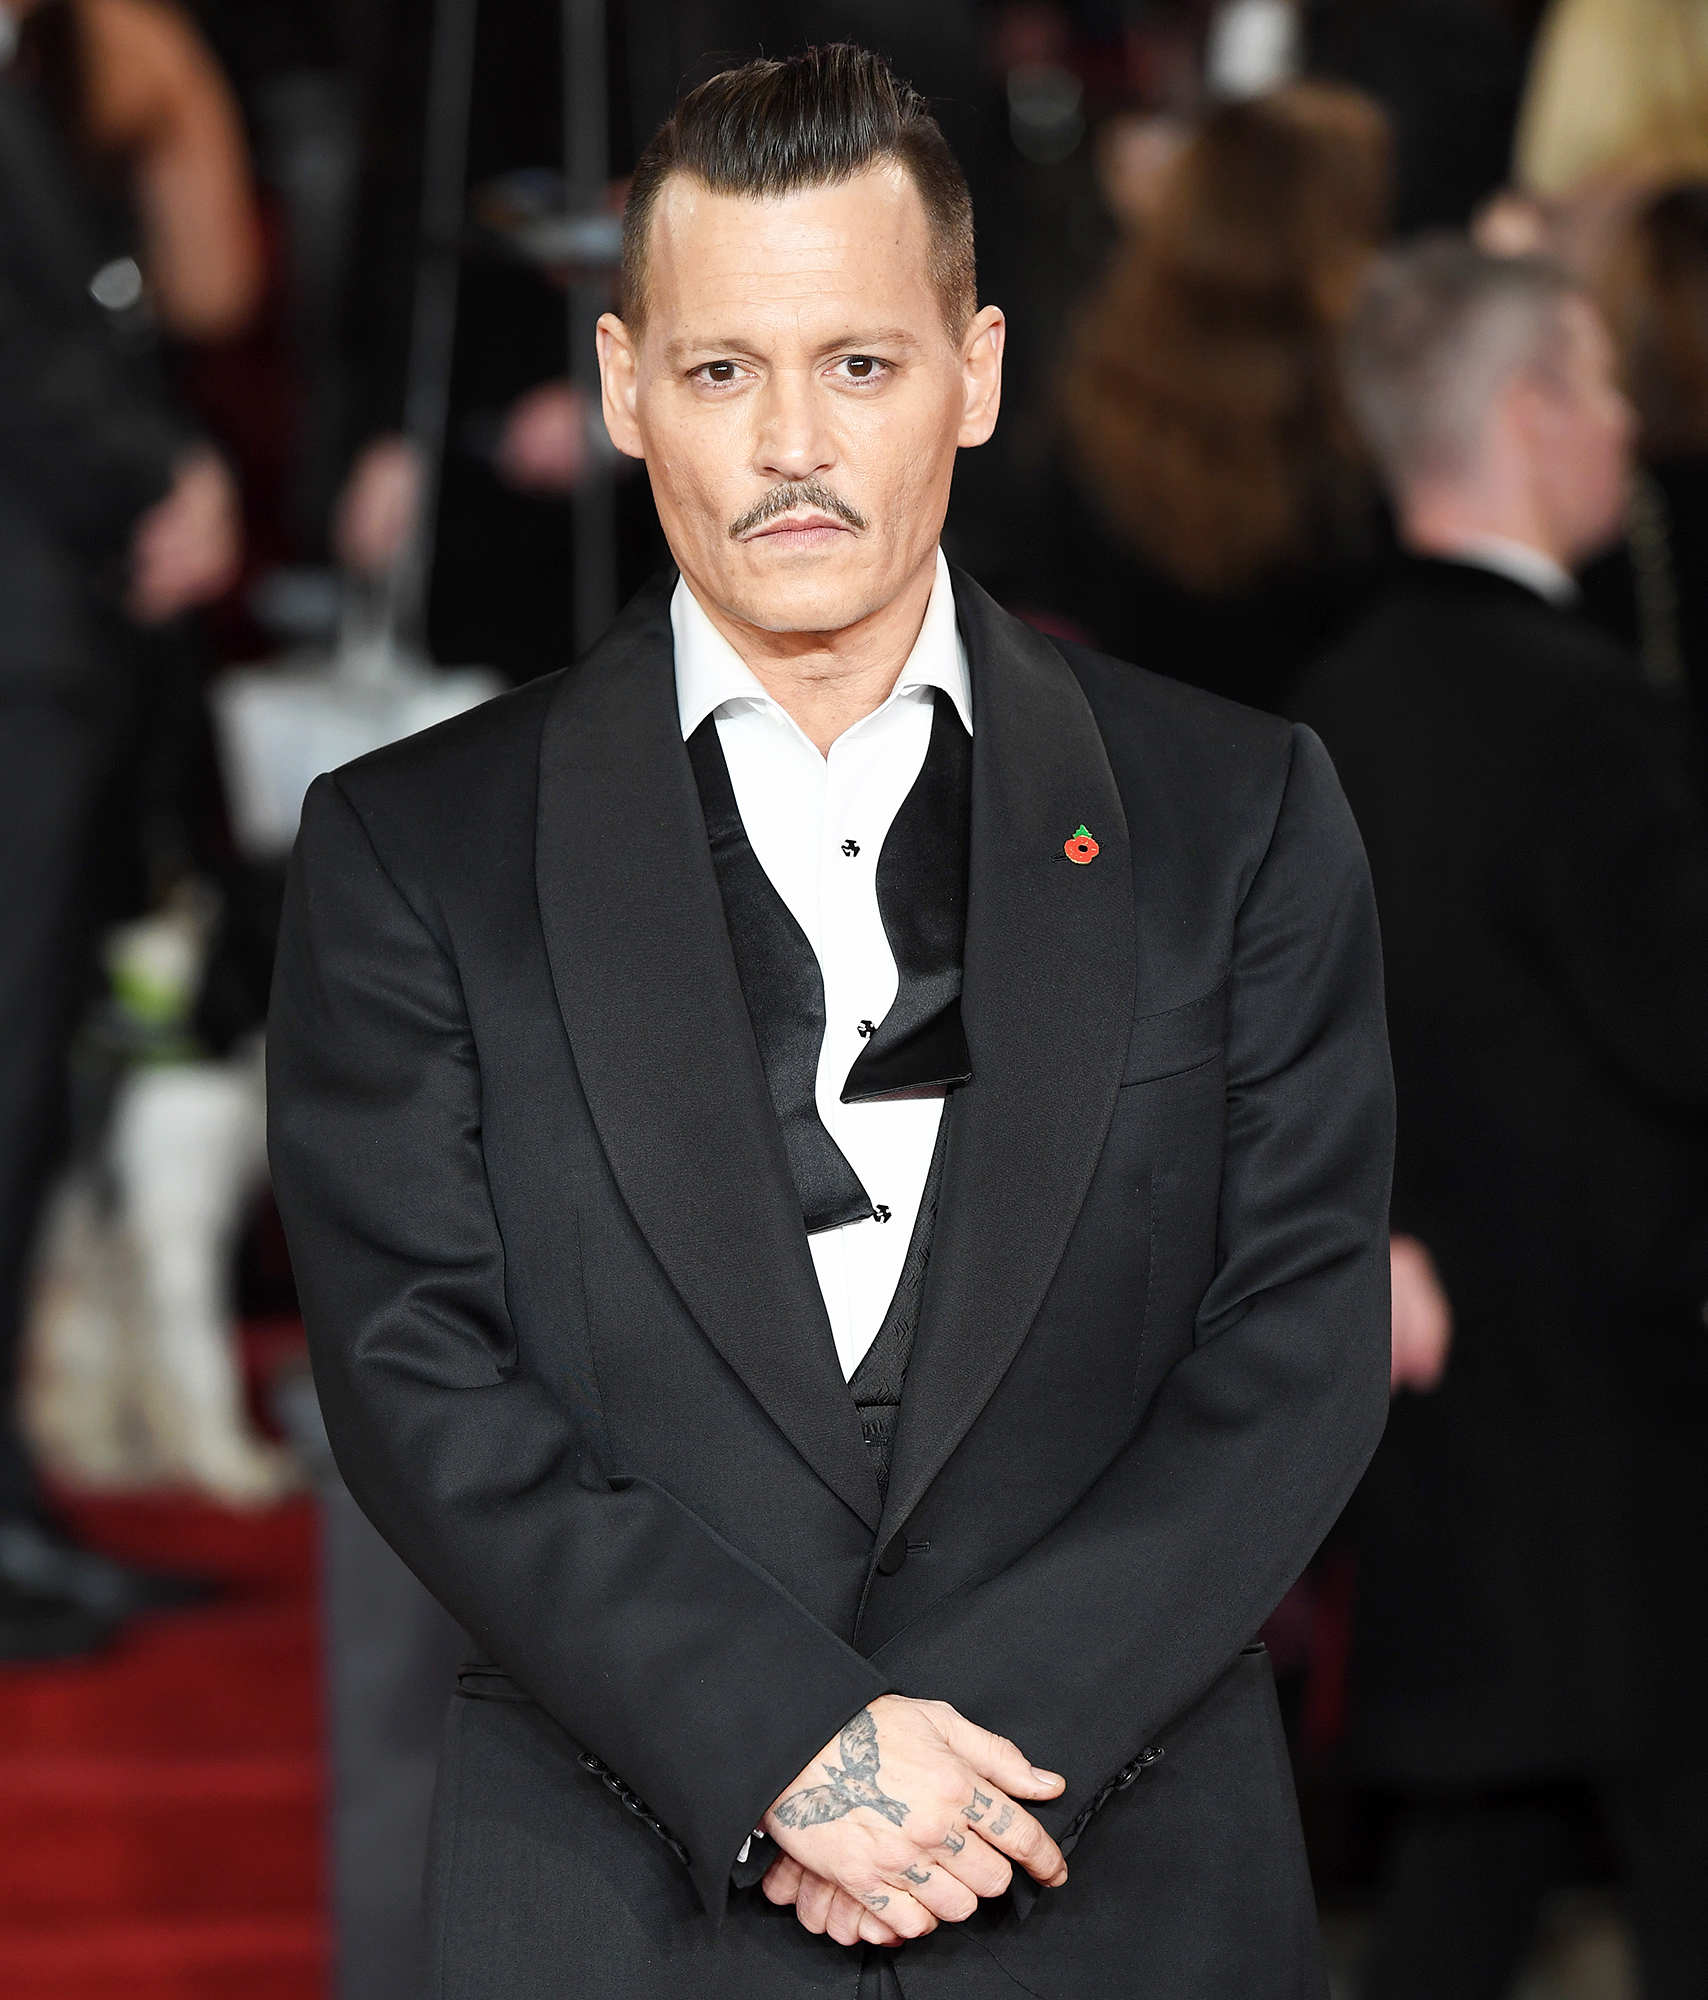 Johnny Depp's Director Defends His On-Set Behavior